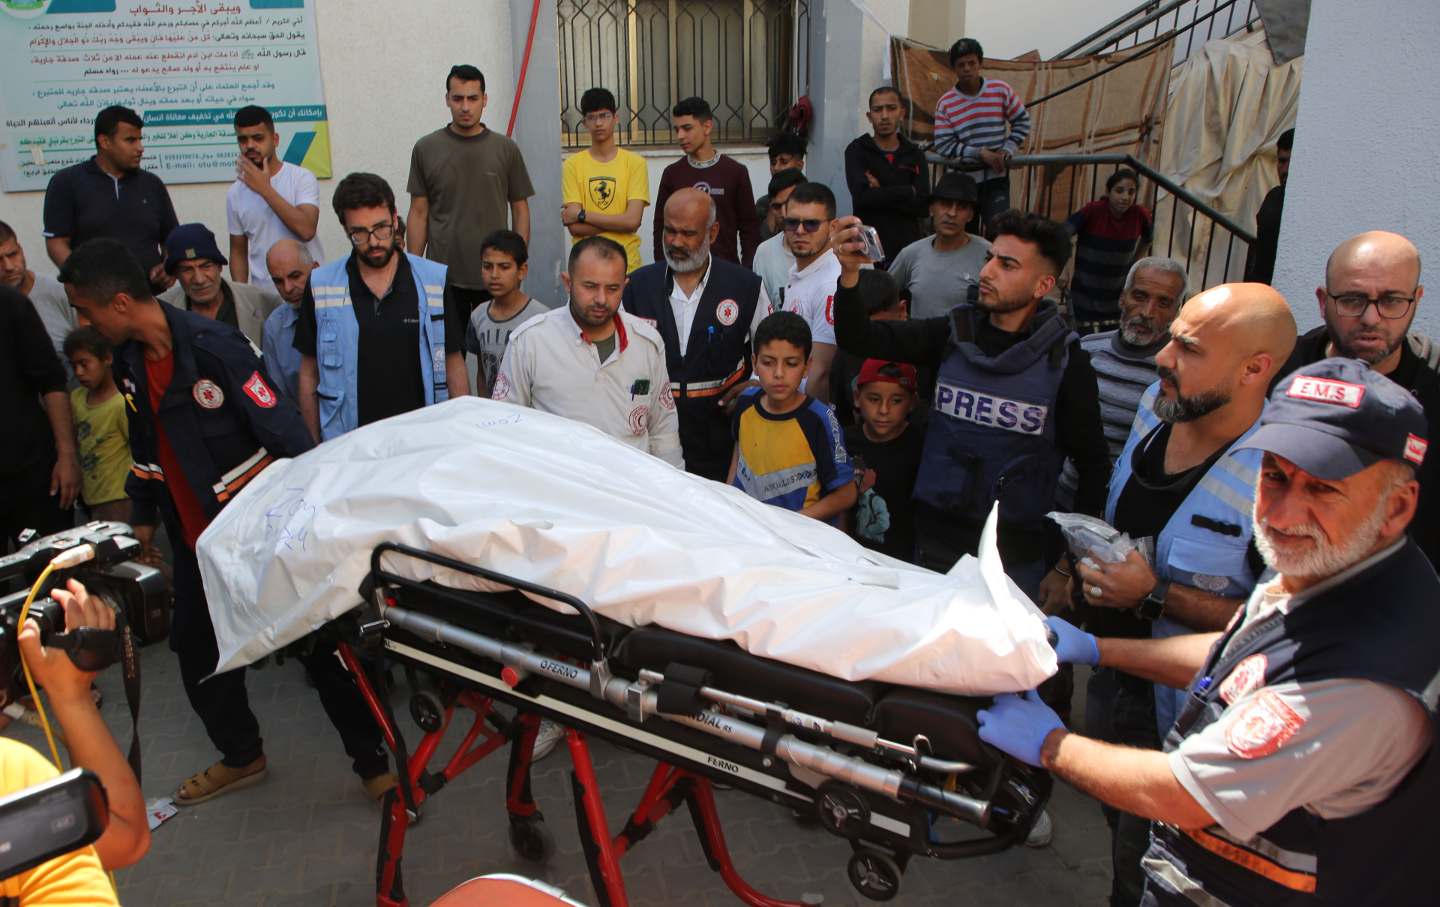 Am 3. April 2024 bereiten sich Menschen auf die Überführung der Leiche eines WCK-Mitarbeiters von World Central Kitchen vor, der durch israelische Luftangriffe in der Nähe des Grenzübergangs Rafah im südlichen Gazastreifen getötet wurde.